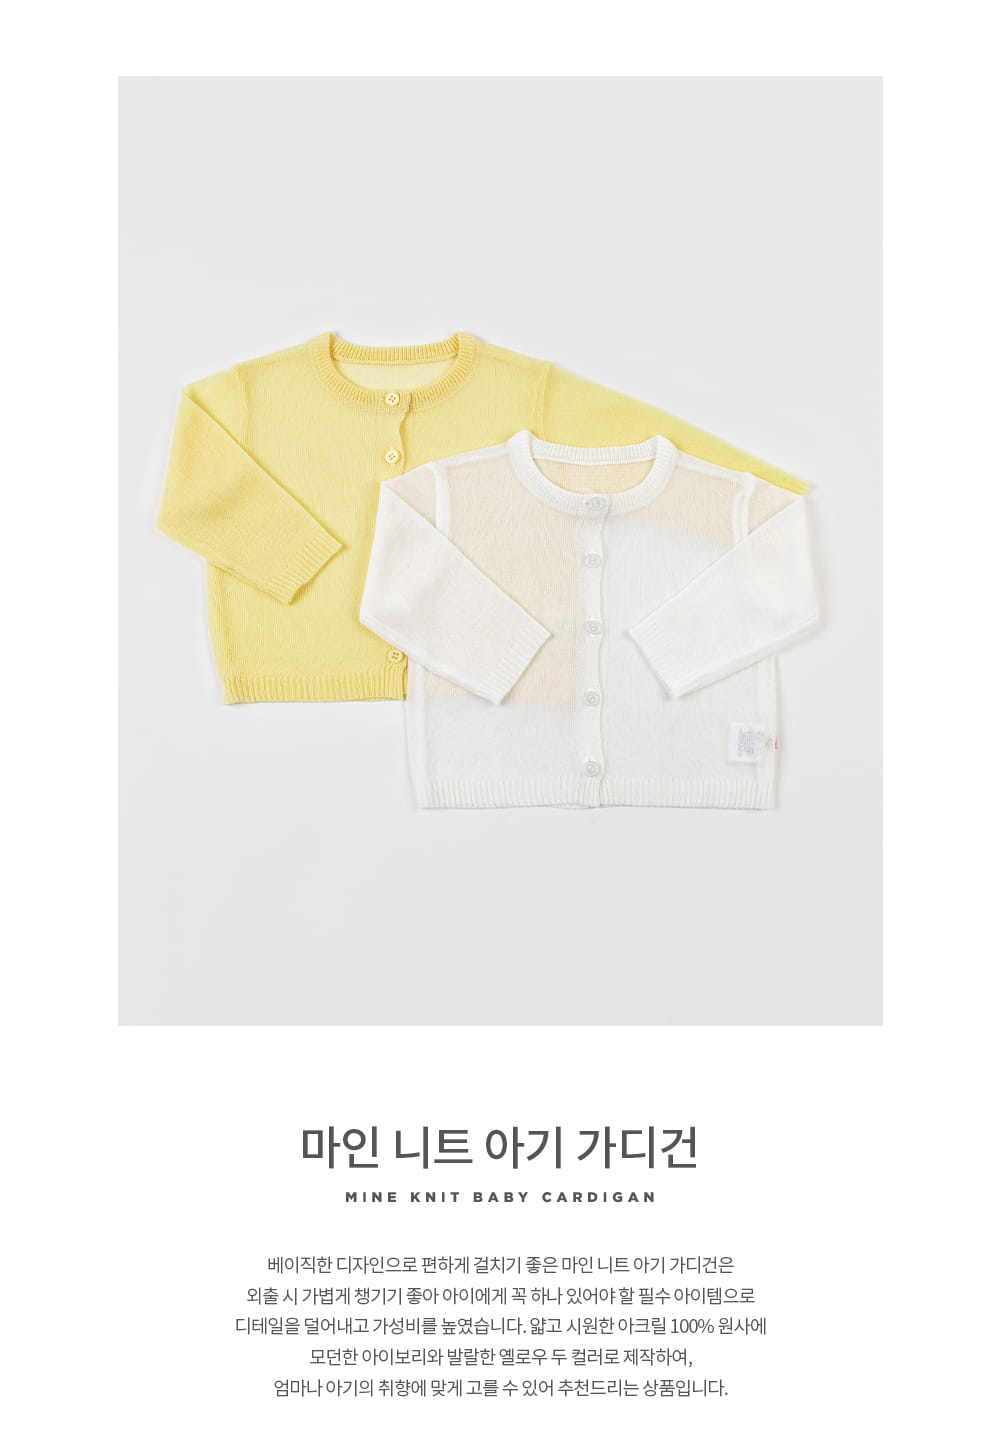 Kids Clara - Korean Baby Fashion - #babyboutiqueclothing - Mine Knit Baby Cardigan - 2